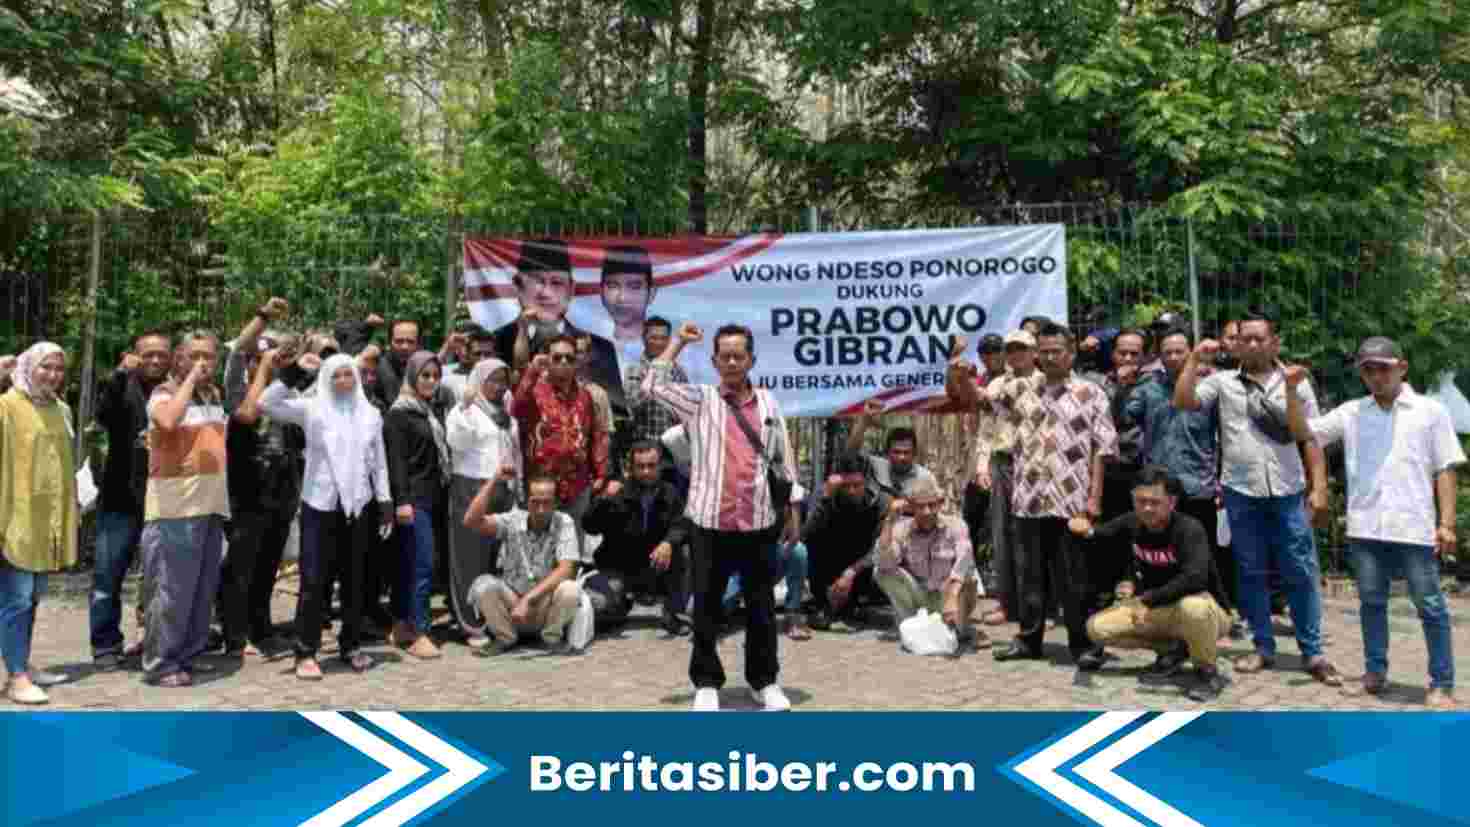 Deklarasi dukung Prabowo Gibran